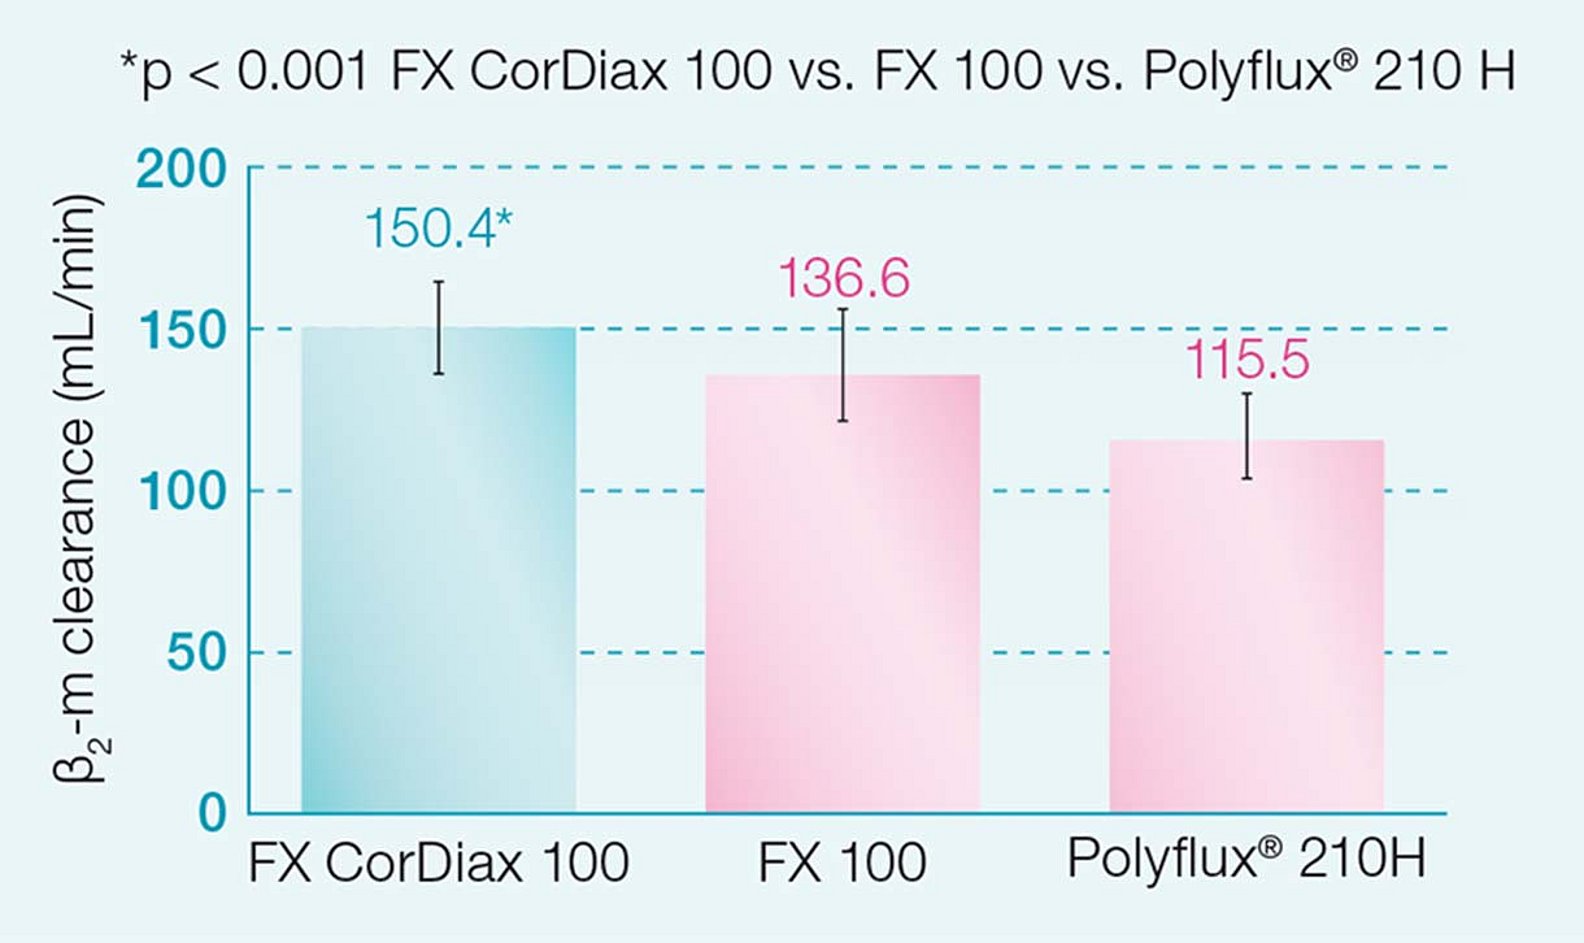 Clearance de fosfato dos dialisadores FX CorDiax